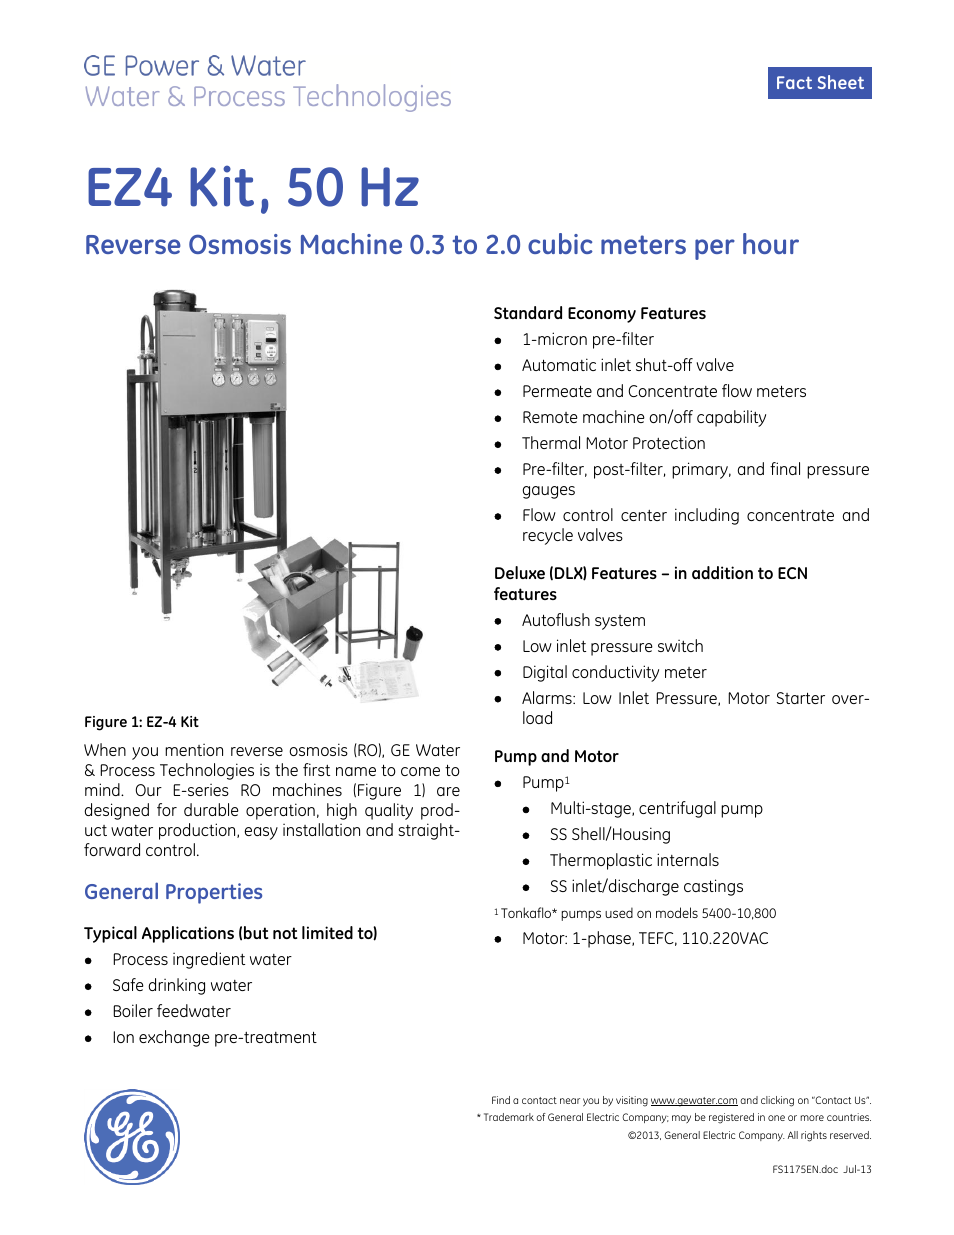 E-Series Reverse Osmosis - EZ-4 Kit 50 Hz